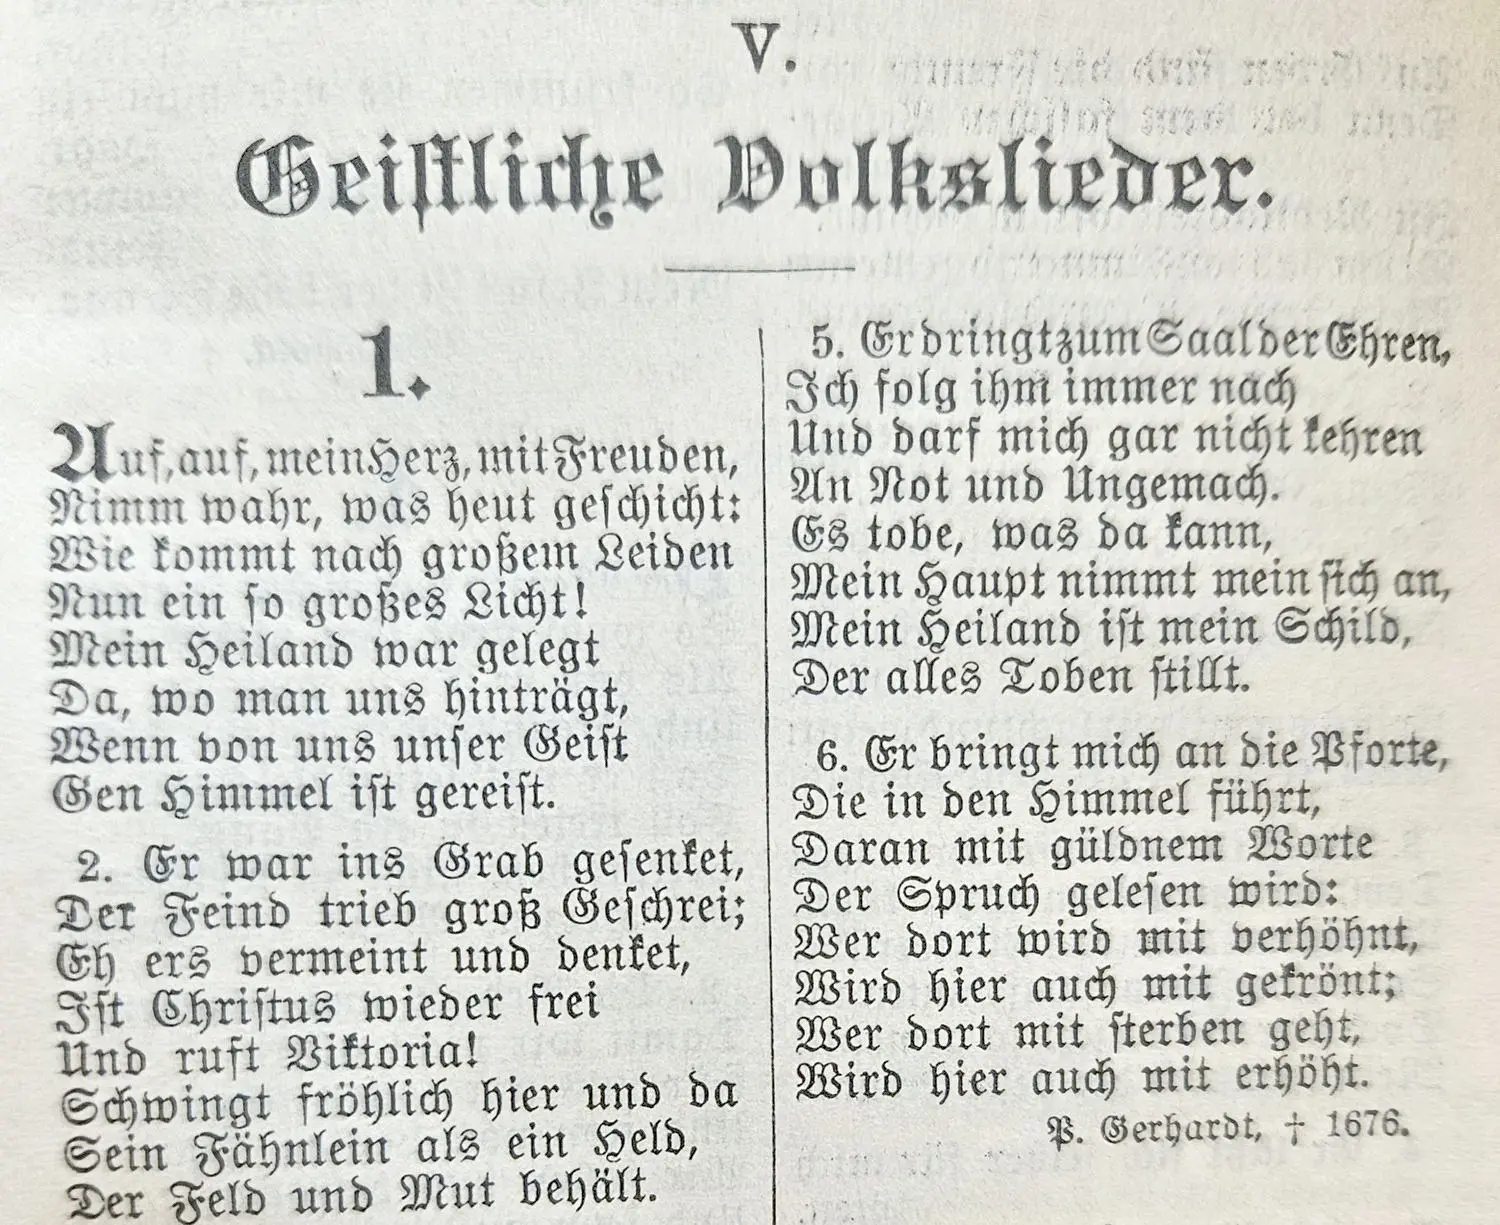 Liedtext zu "Auf, auf, mein Herz, mit Freuden" im Anhang des EG von 1905.